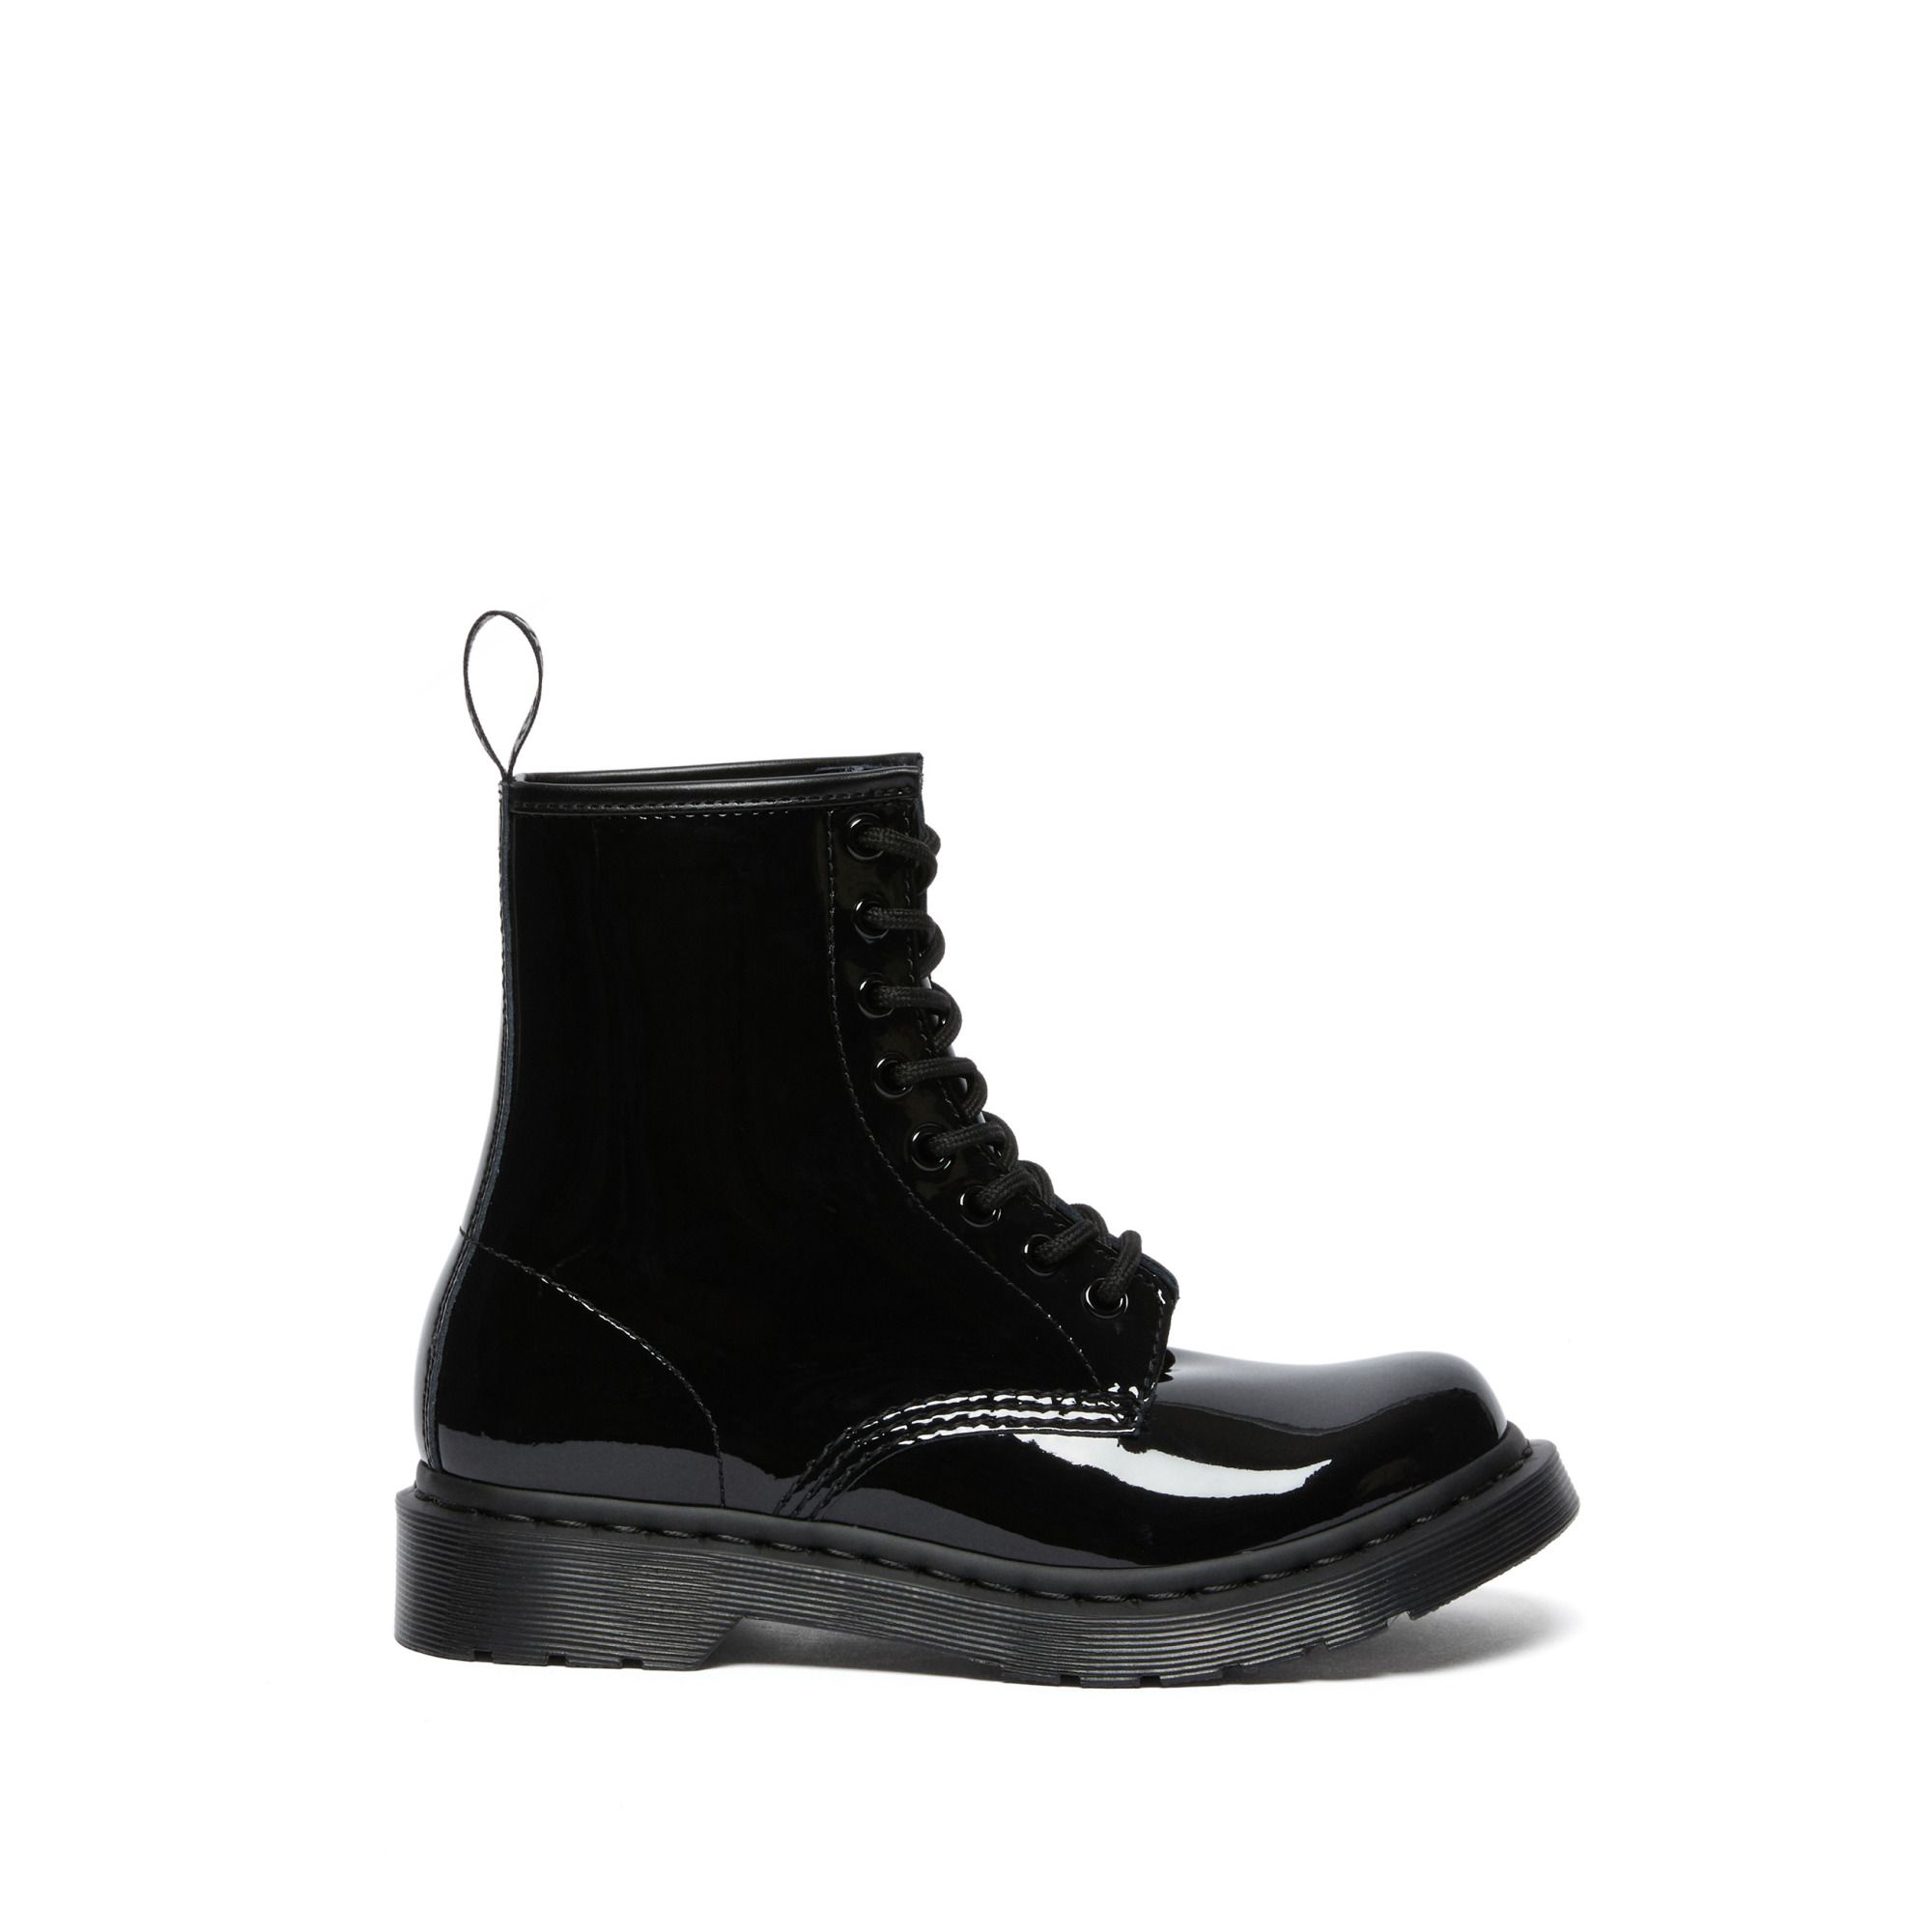 Dr Martens - Boots à Lacets 1460 Cuir Verni - Collection Femme - - Noir